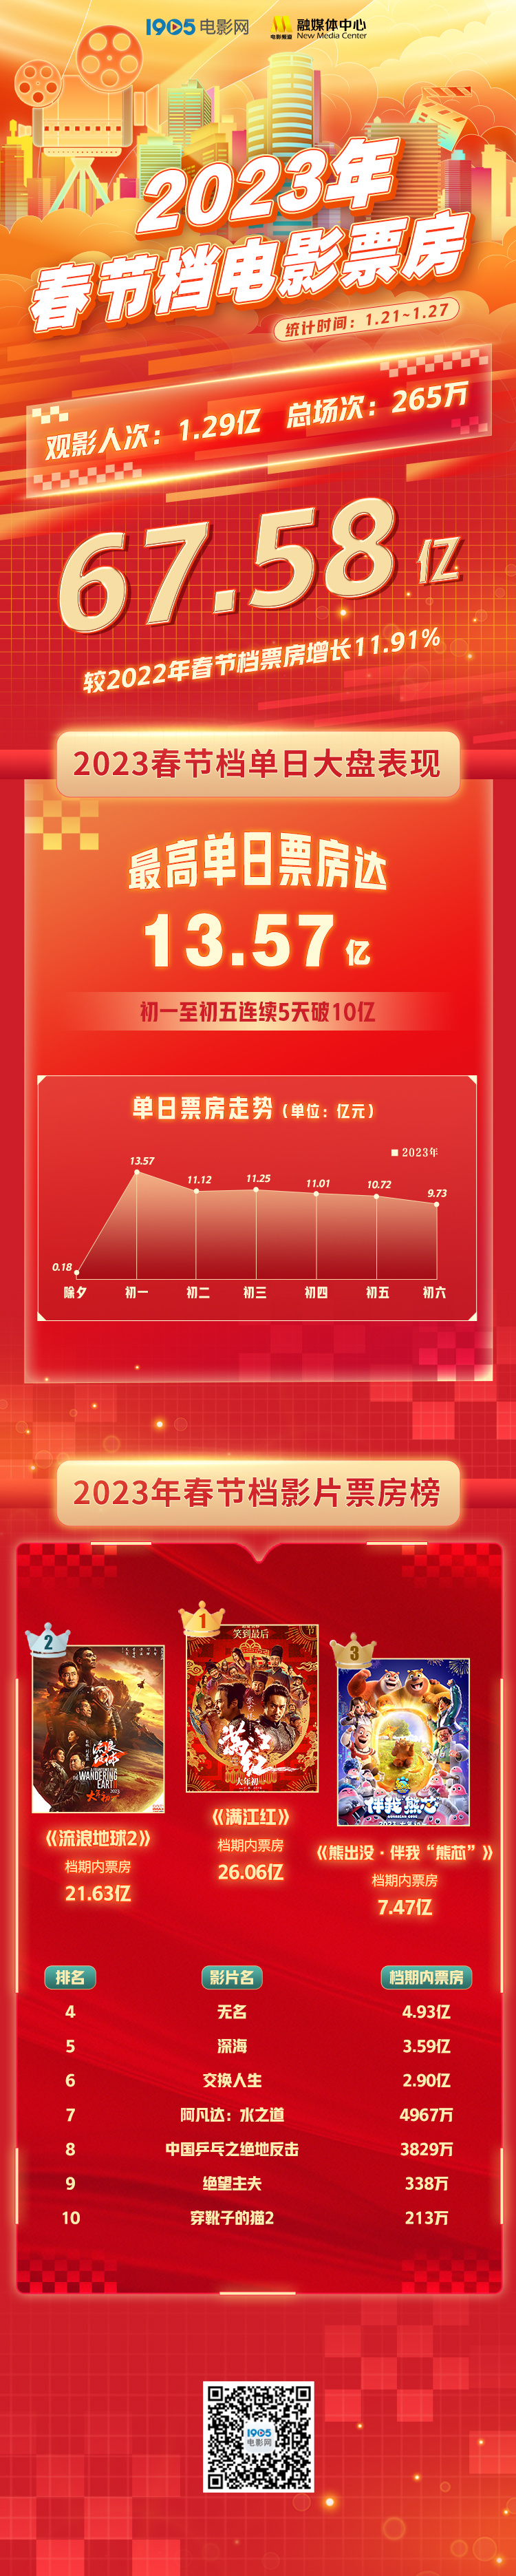 2023春节档票房67.58亿 《满江红》26.06亿夺冠